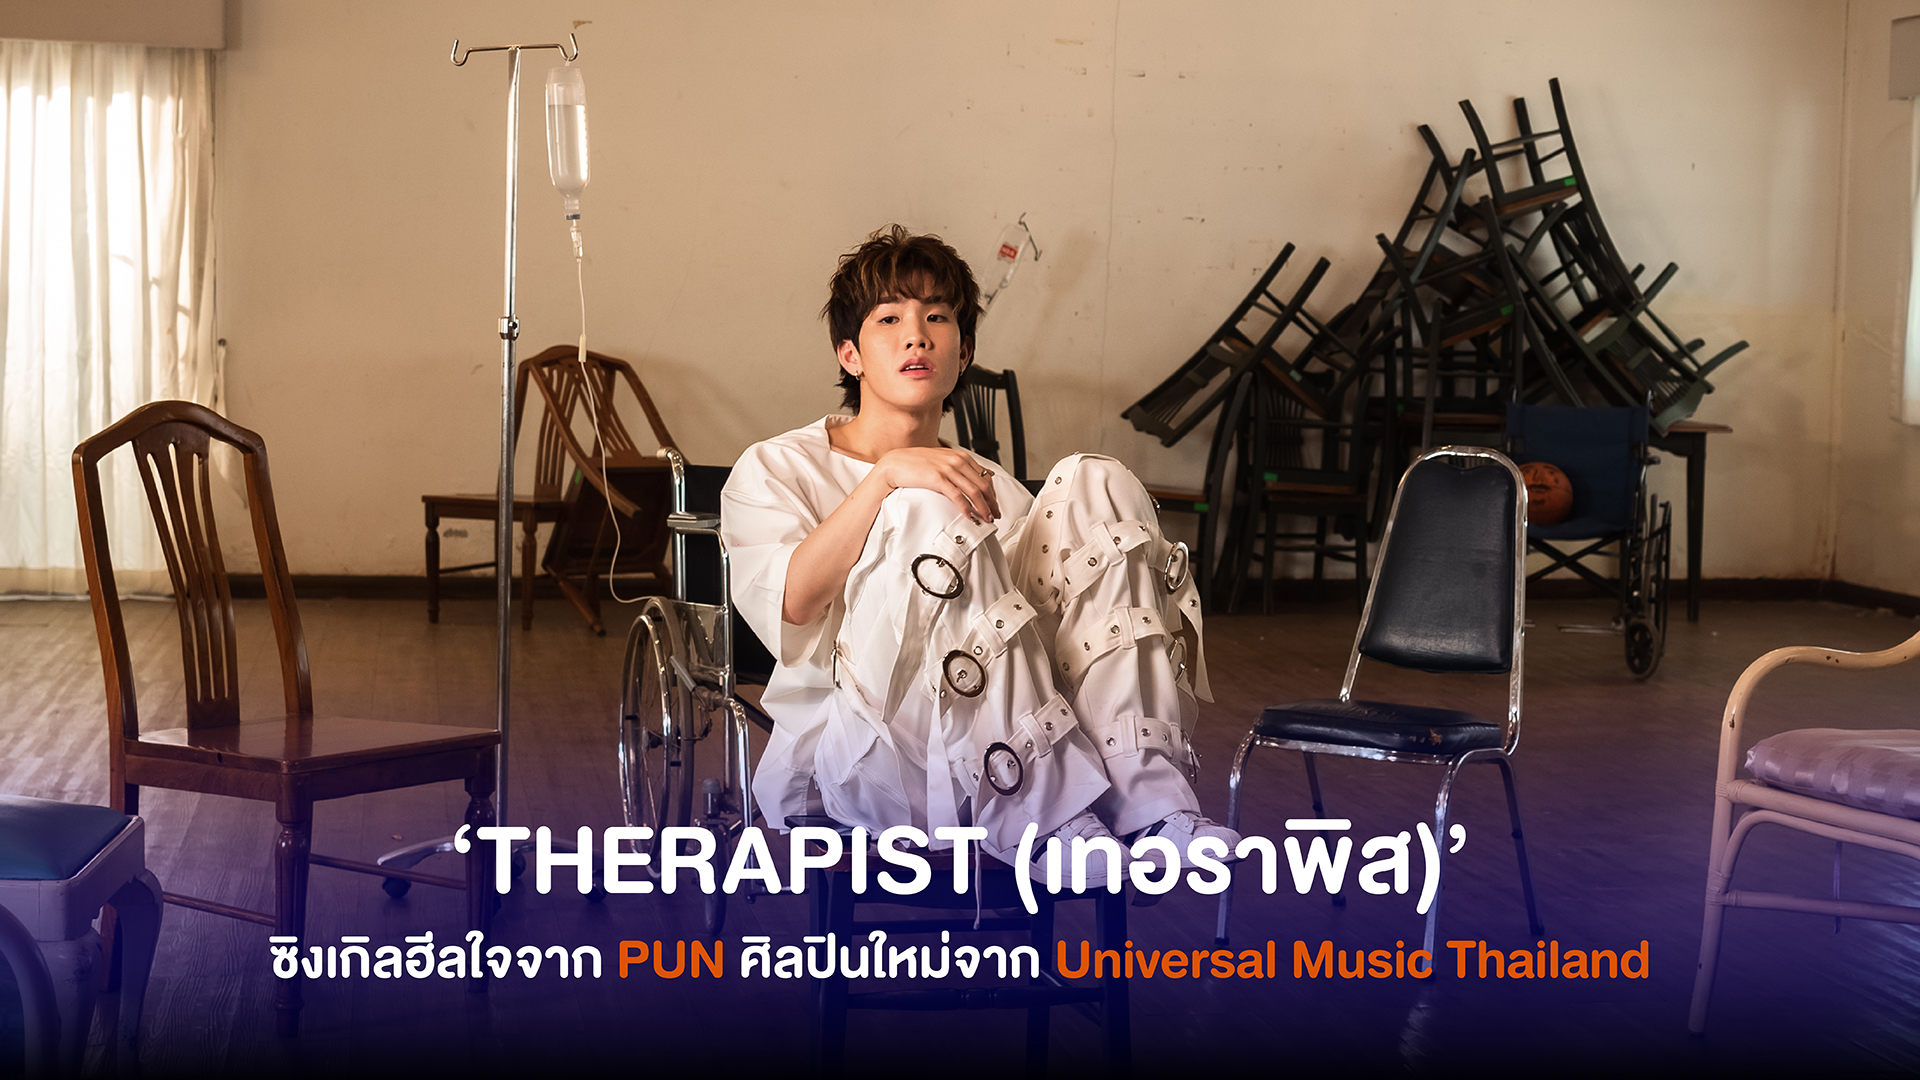 PUN ศิลปินคนล่าสุดจาก Universal Music Thailand ส่งซิงเกิลฮีลใจที่ทุกคนสามารถเป็น ‘THERAPIST (เทอราพิส)’ สำหรับใครได้เสมอ